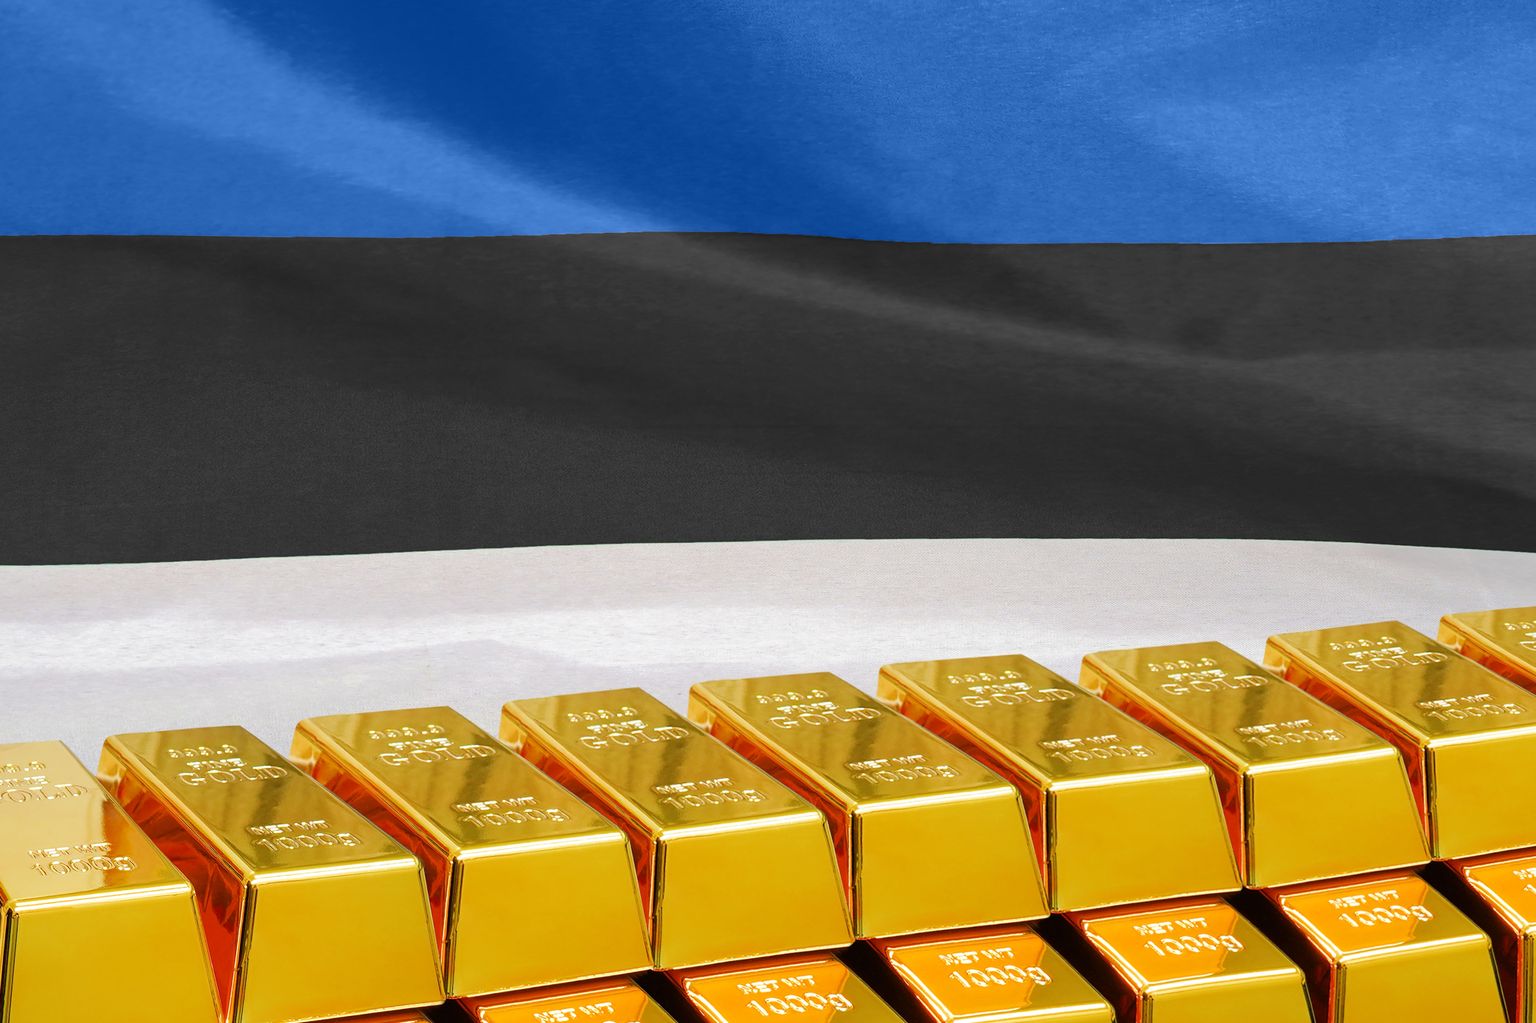 Eesti hoidis kullastandardist kinni viimse hetkeni, ka siis, kui paljud suurriigid sellest juba loobunud olid.